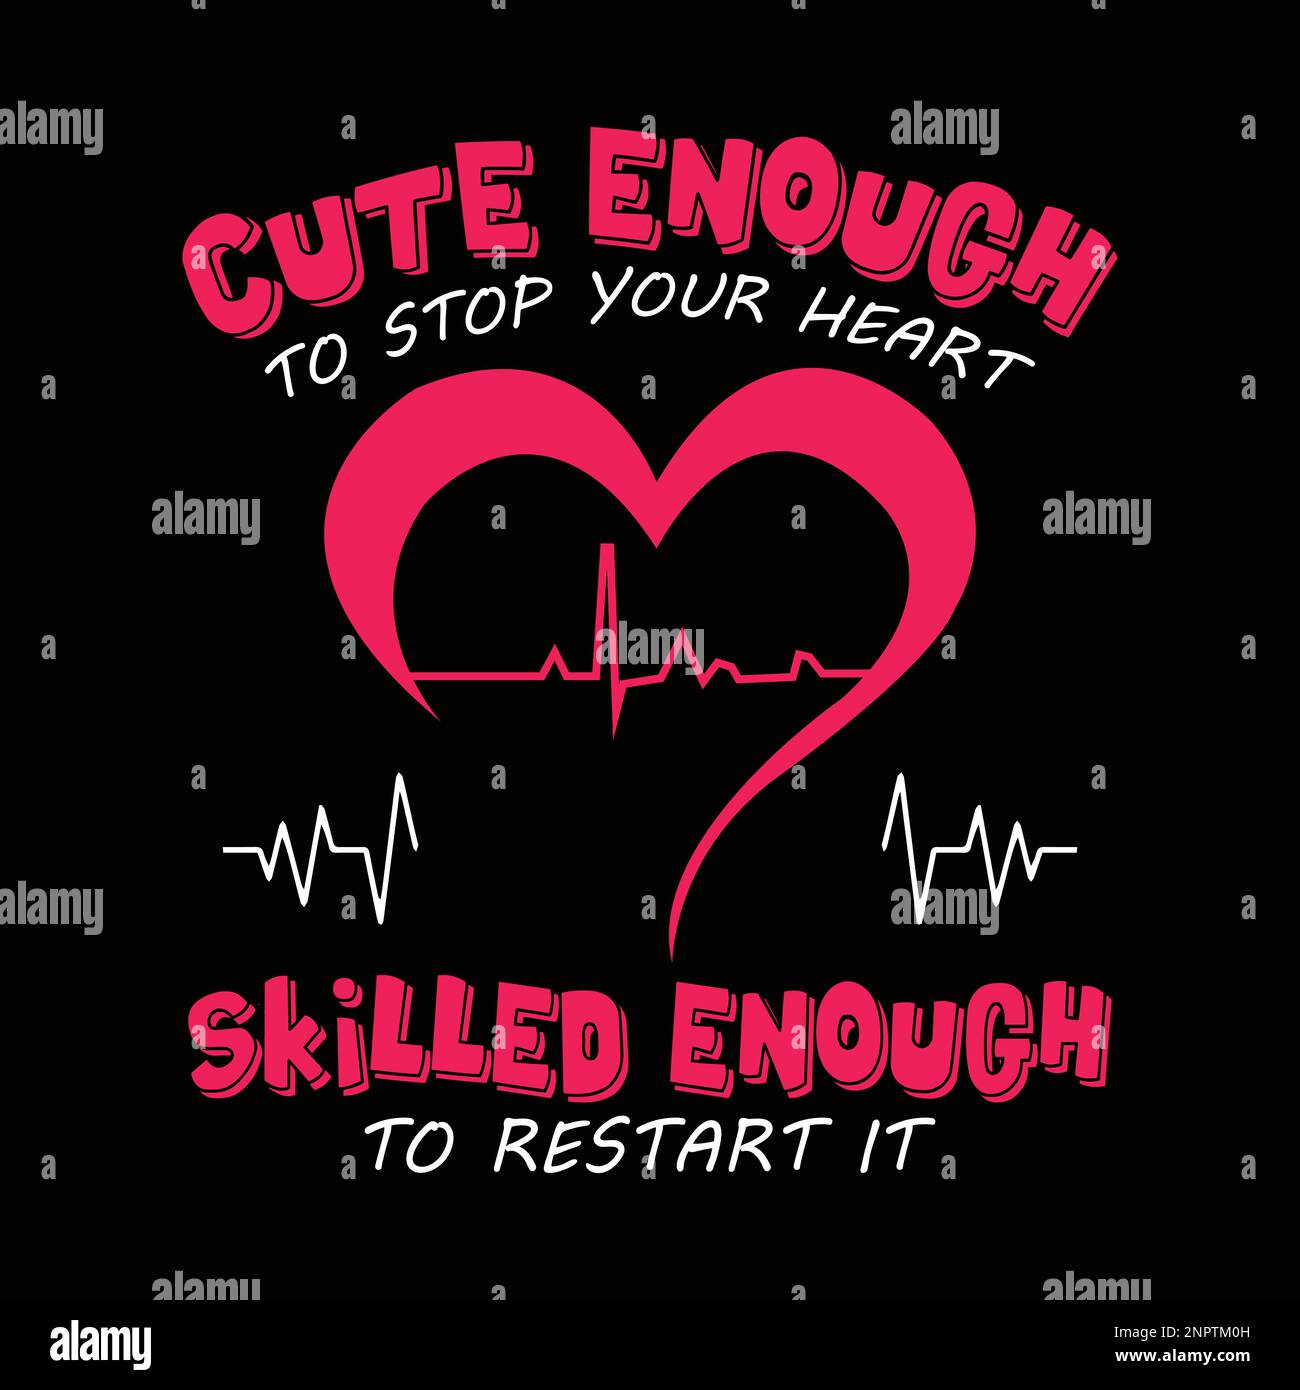 Infermiera che dice e cita il disegno con il segno di heartbeat - carino abbastanza per arrestare il vostro cuore, abbastanza esperto per riavviarlo. Illustrazione Vettoriale